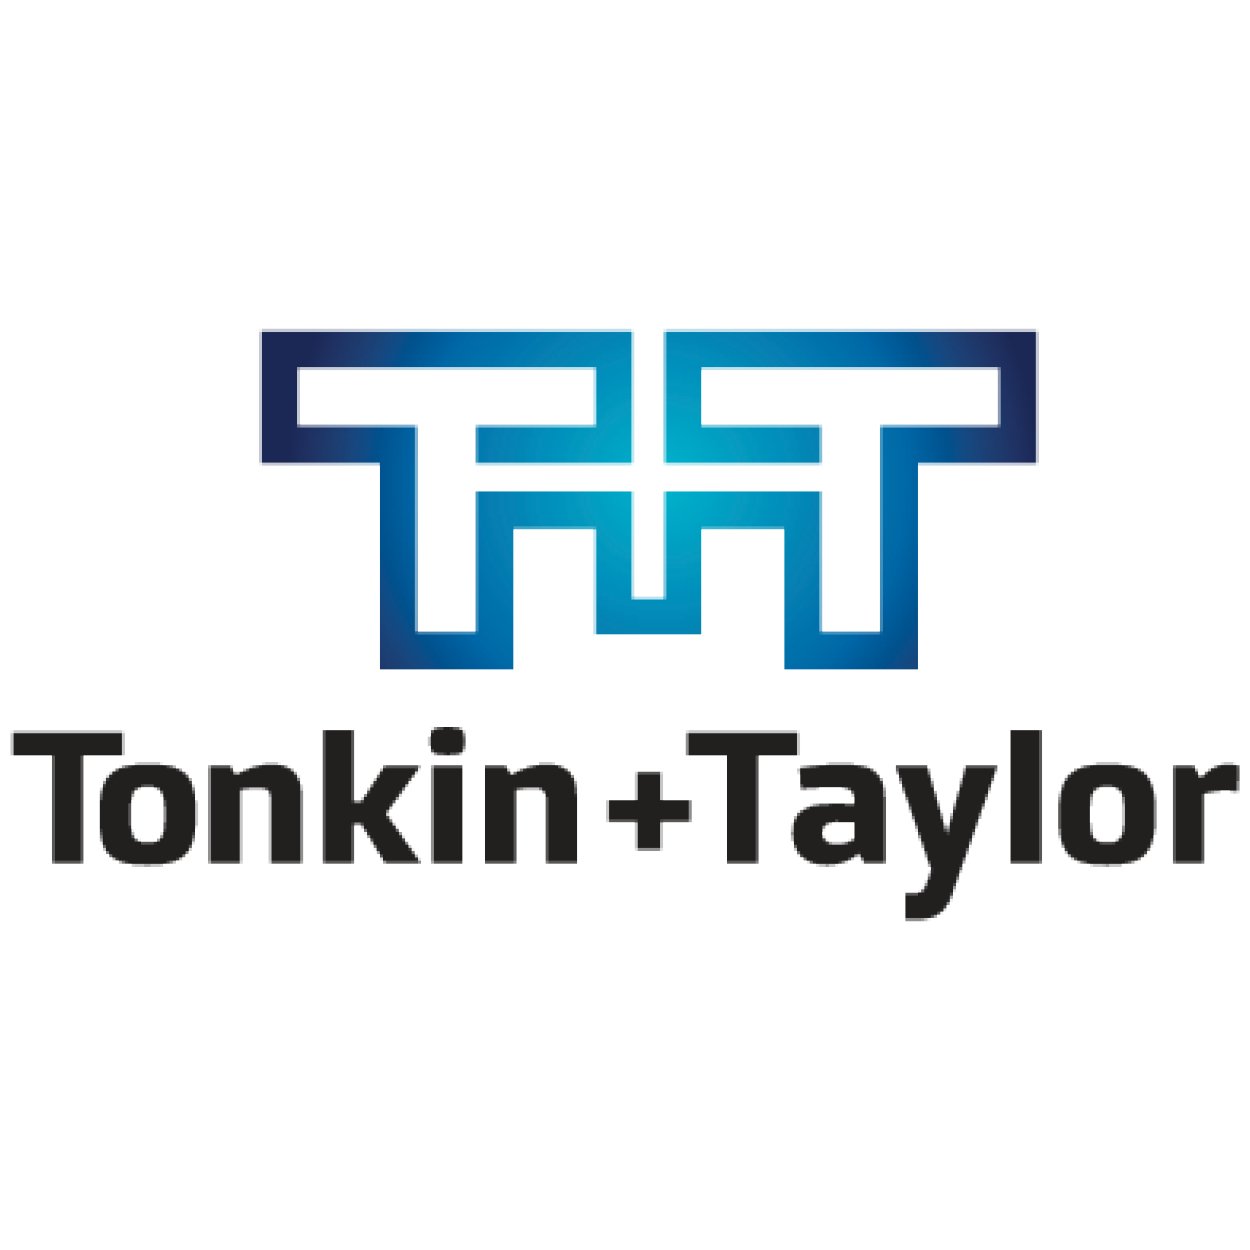 Tonkin + Taylor.jpg